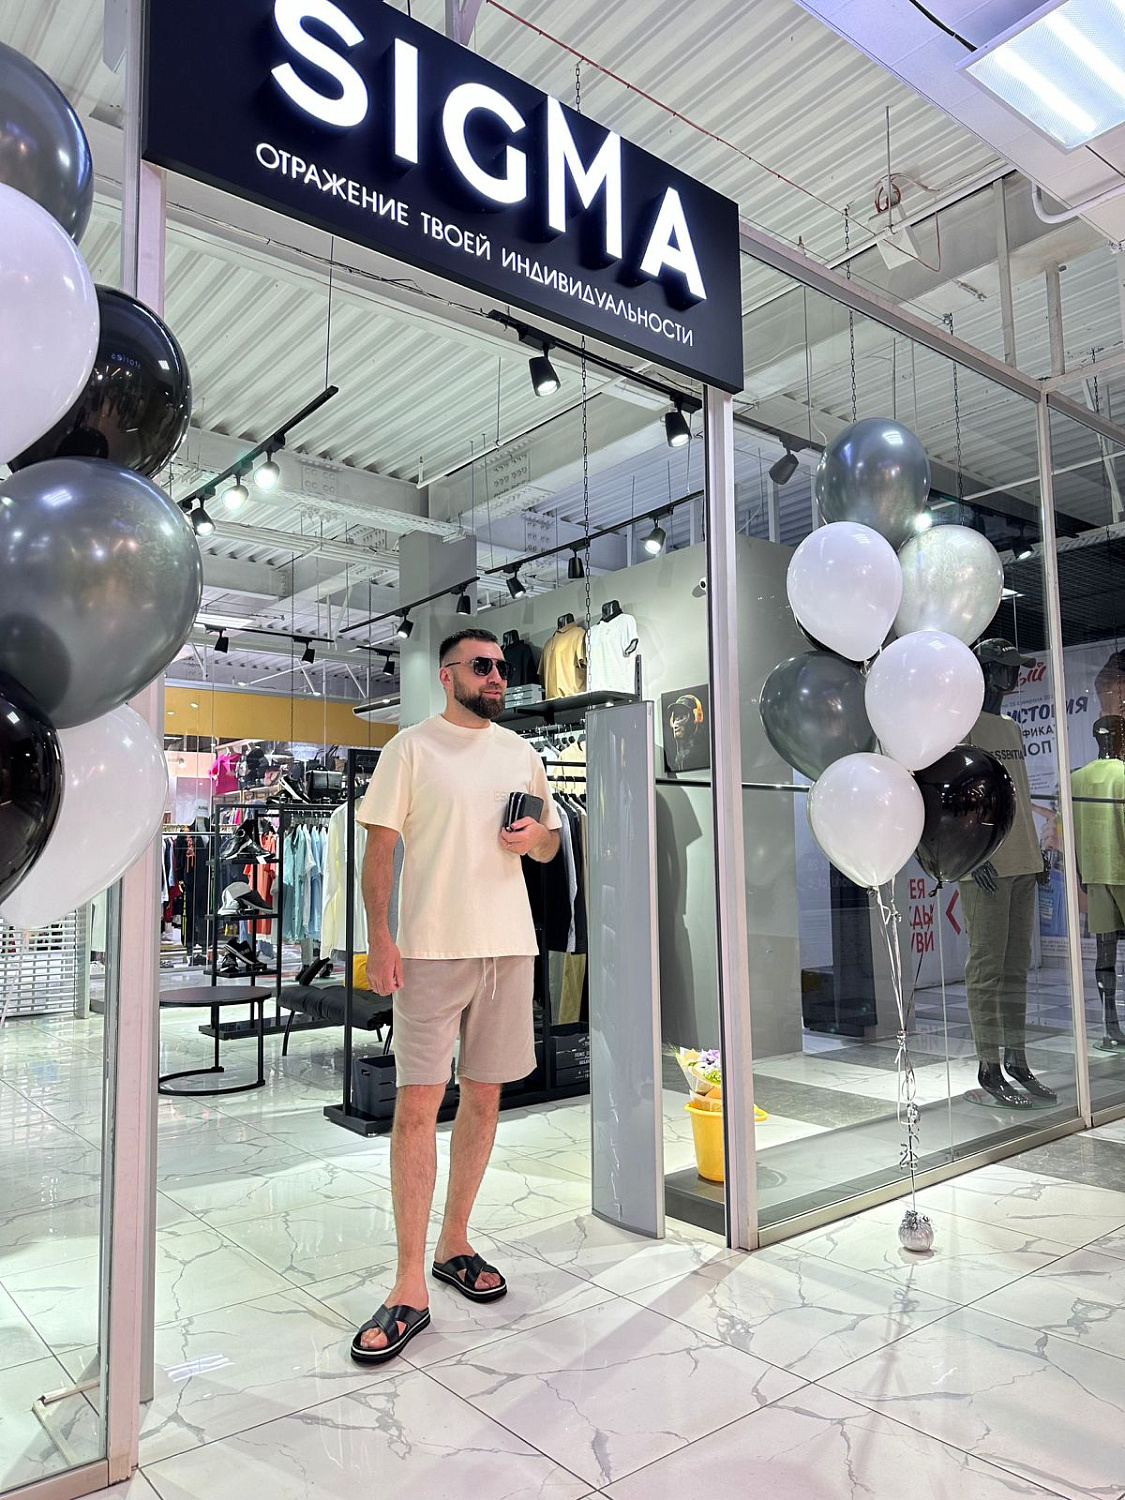 Открытие нового магазина мужской одежды "Sigma"